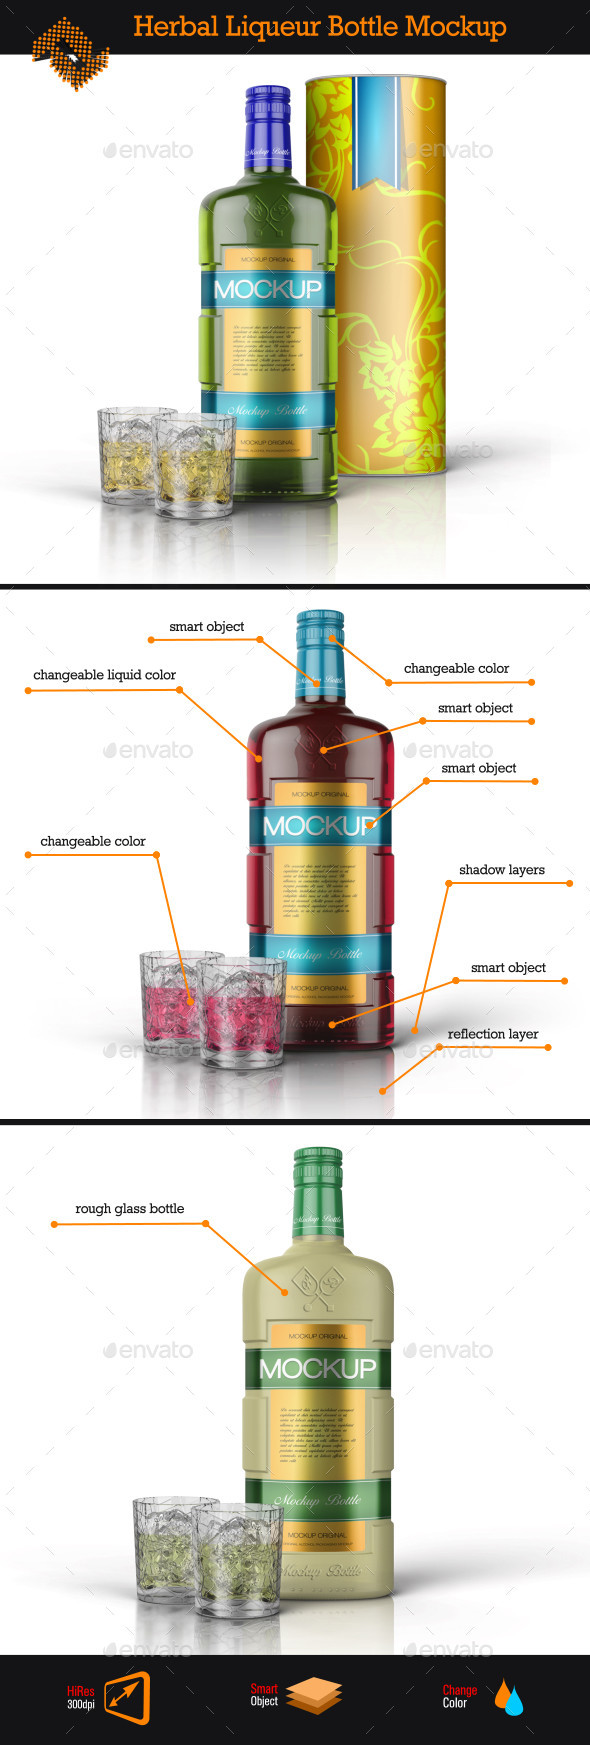 Liqueur bottle prev